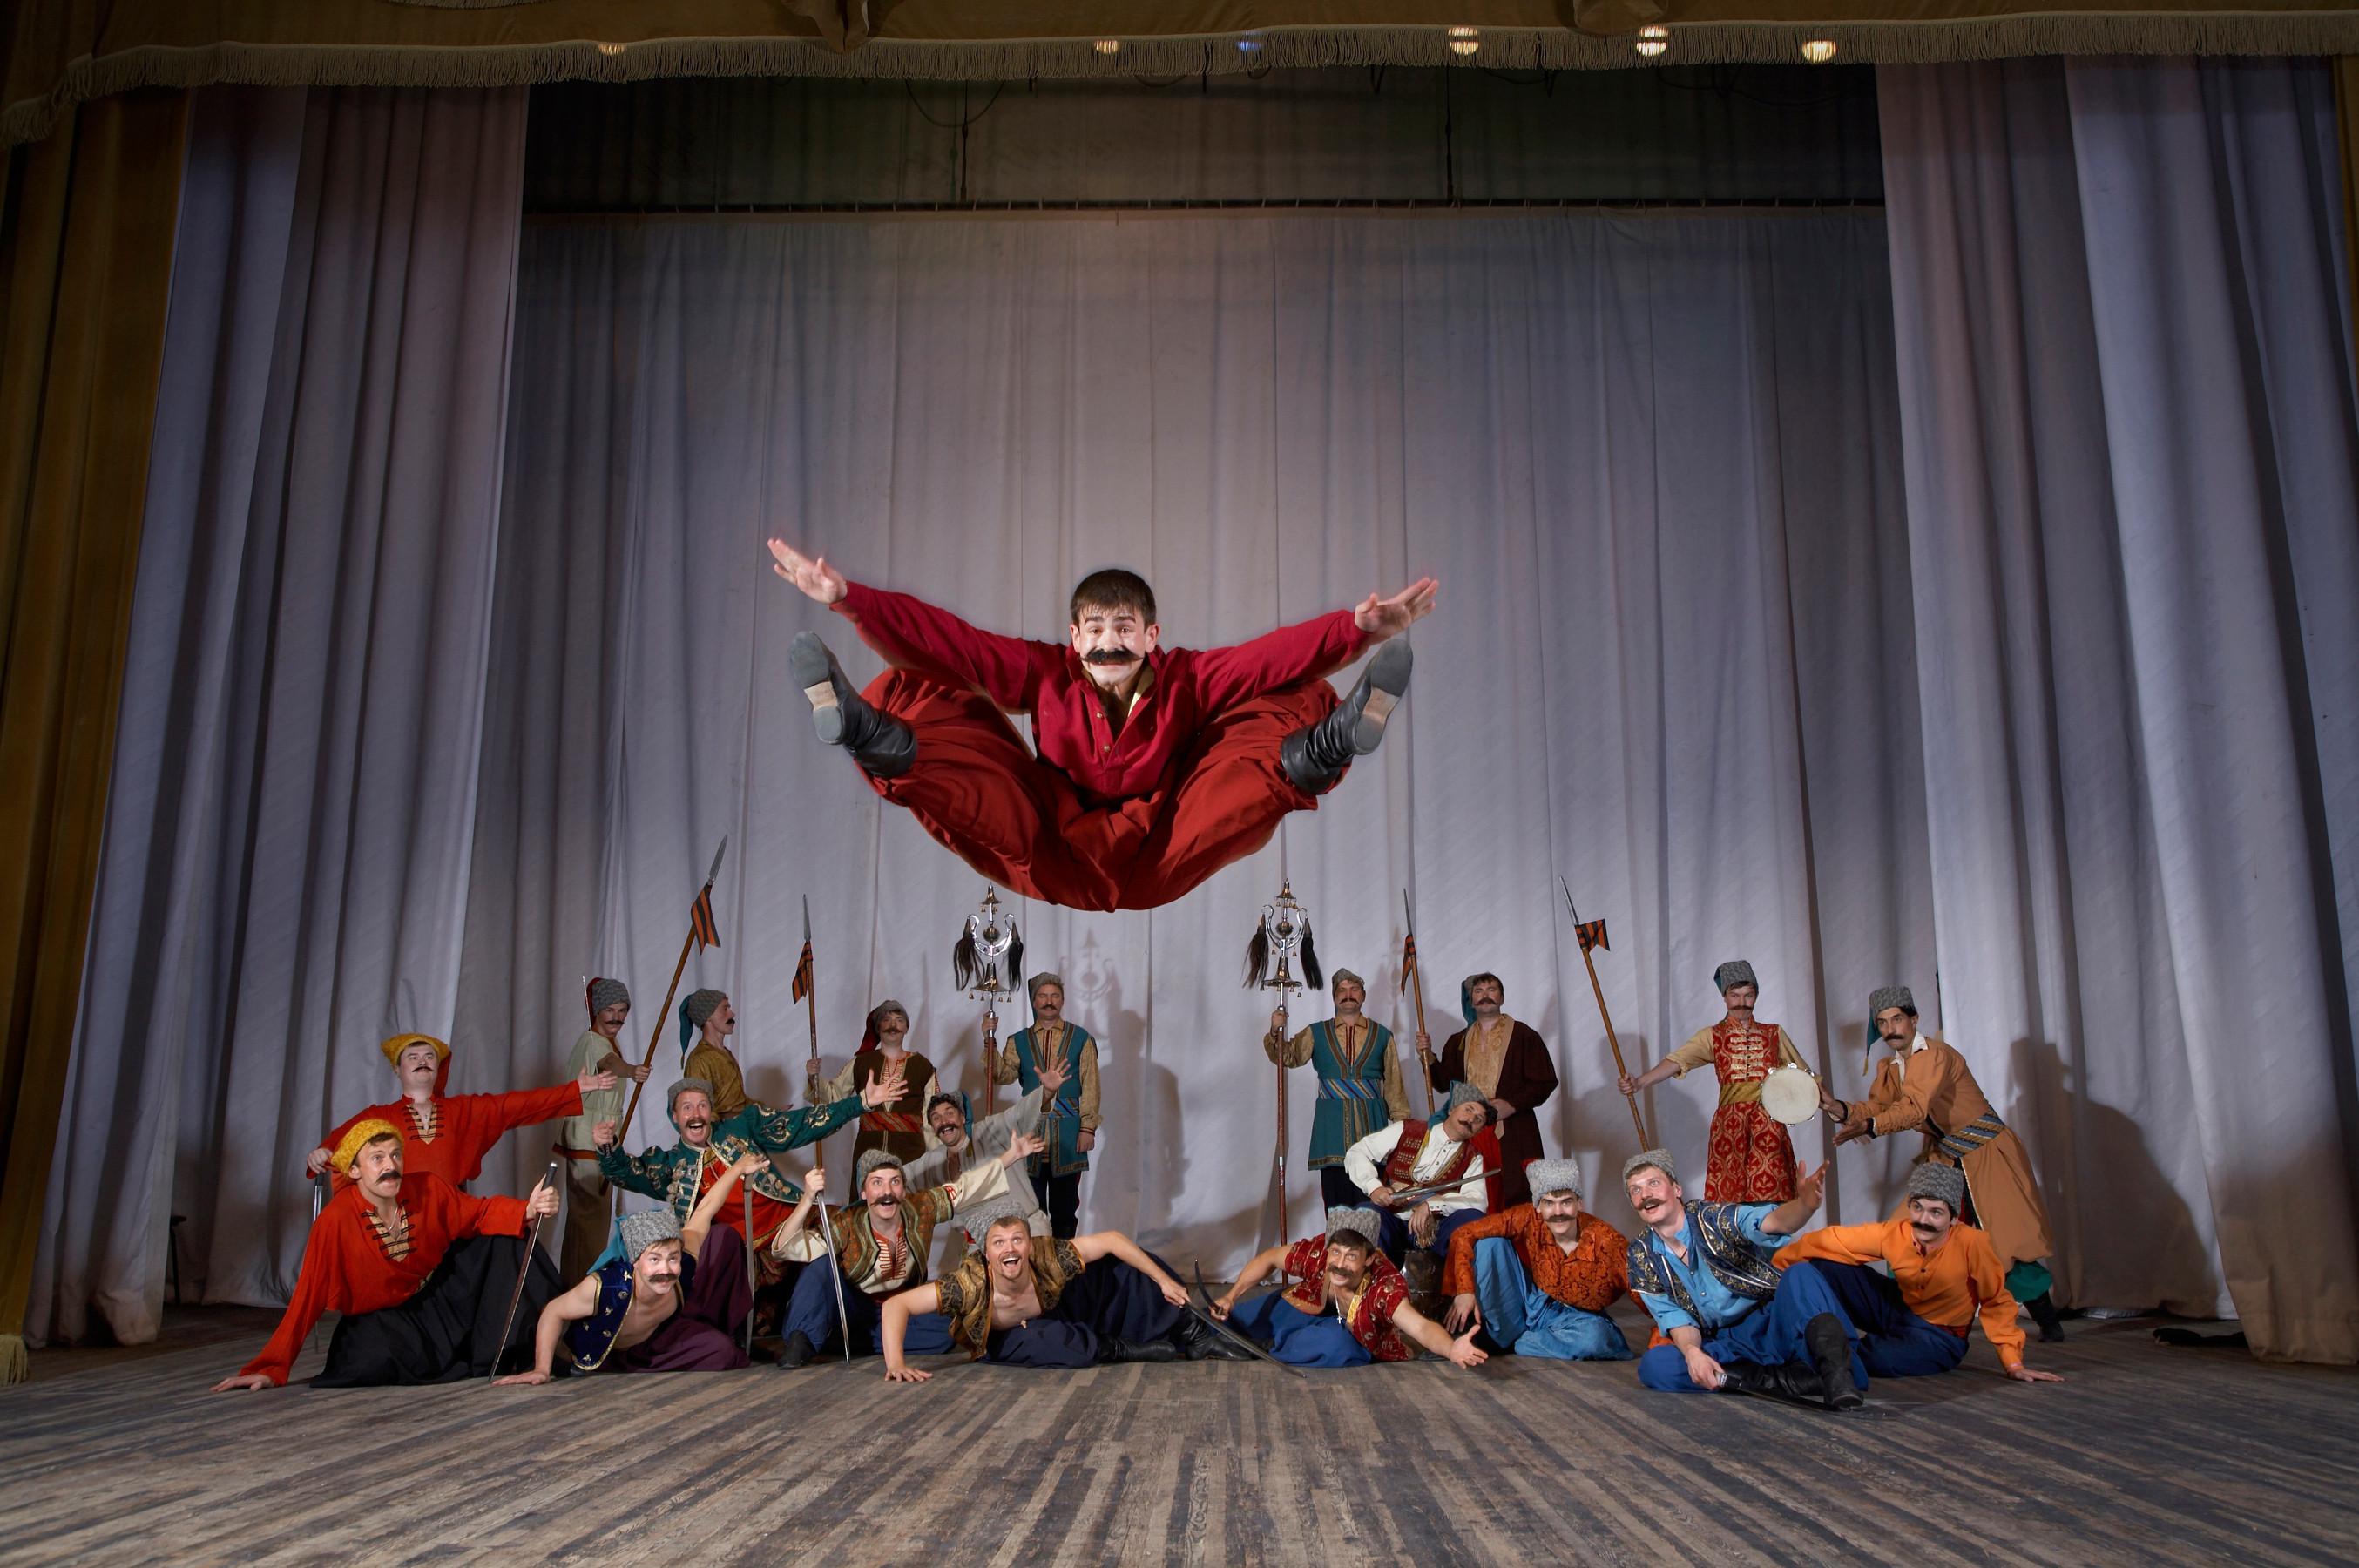 康乐及文化事务署五月下旬将呈献两场顿河哥萨克国立民族歌舞团的精湛演出。图示顿河哥萨克国立民族歌舞团过往演出剧照。